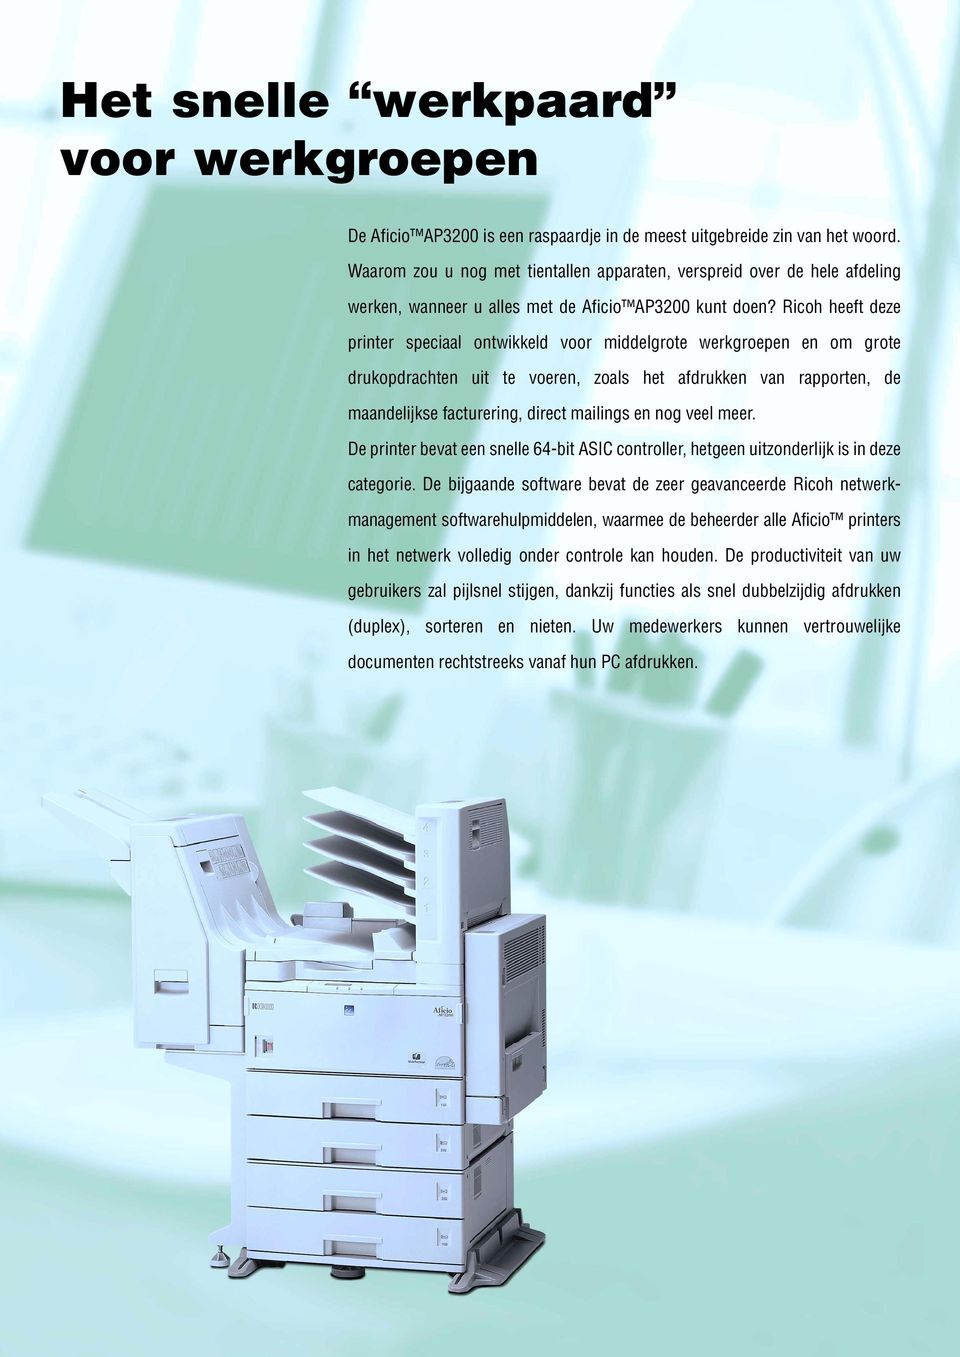 Ricoh heeft deze printer speciaal ontwikkeld voor middelgrote werkgroepen en om grote drukopdrachten uit te voeren, zoals het afdrukken van rapporten, de maandelijkse facturering, direct mailings en